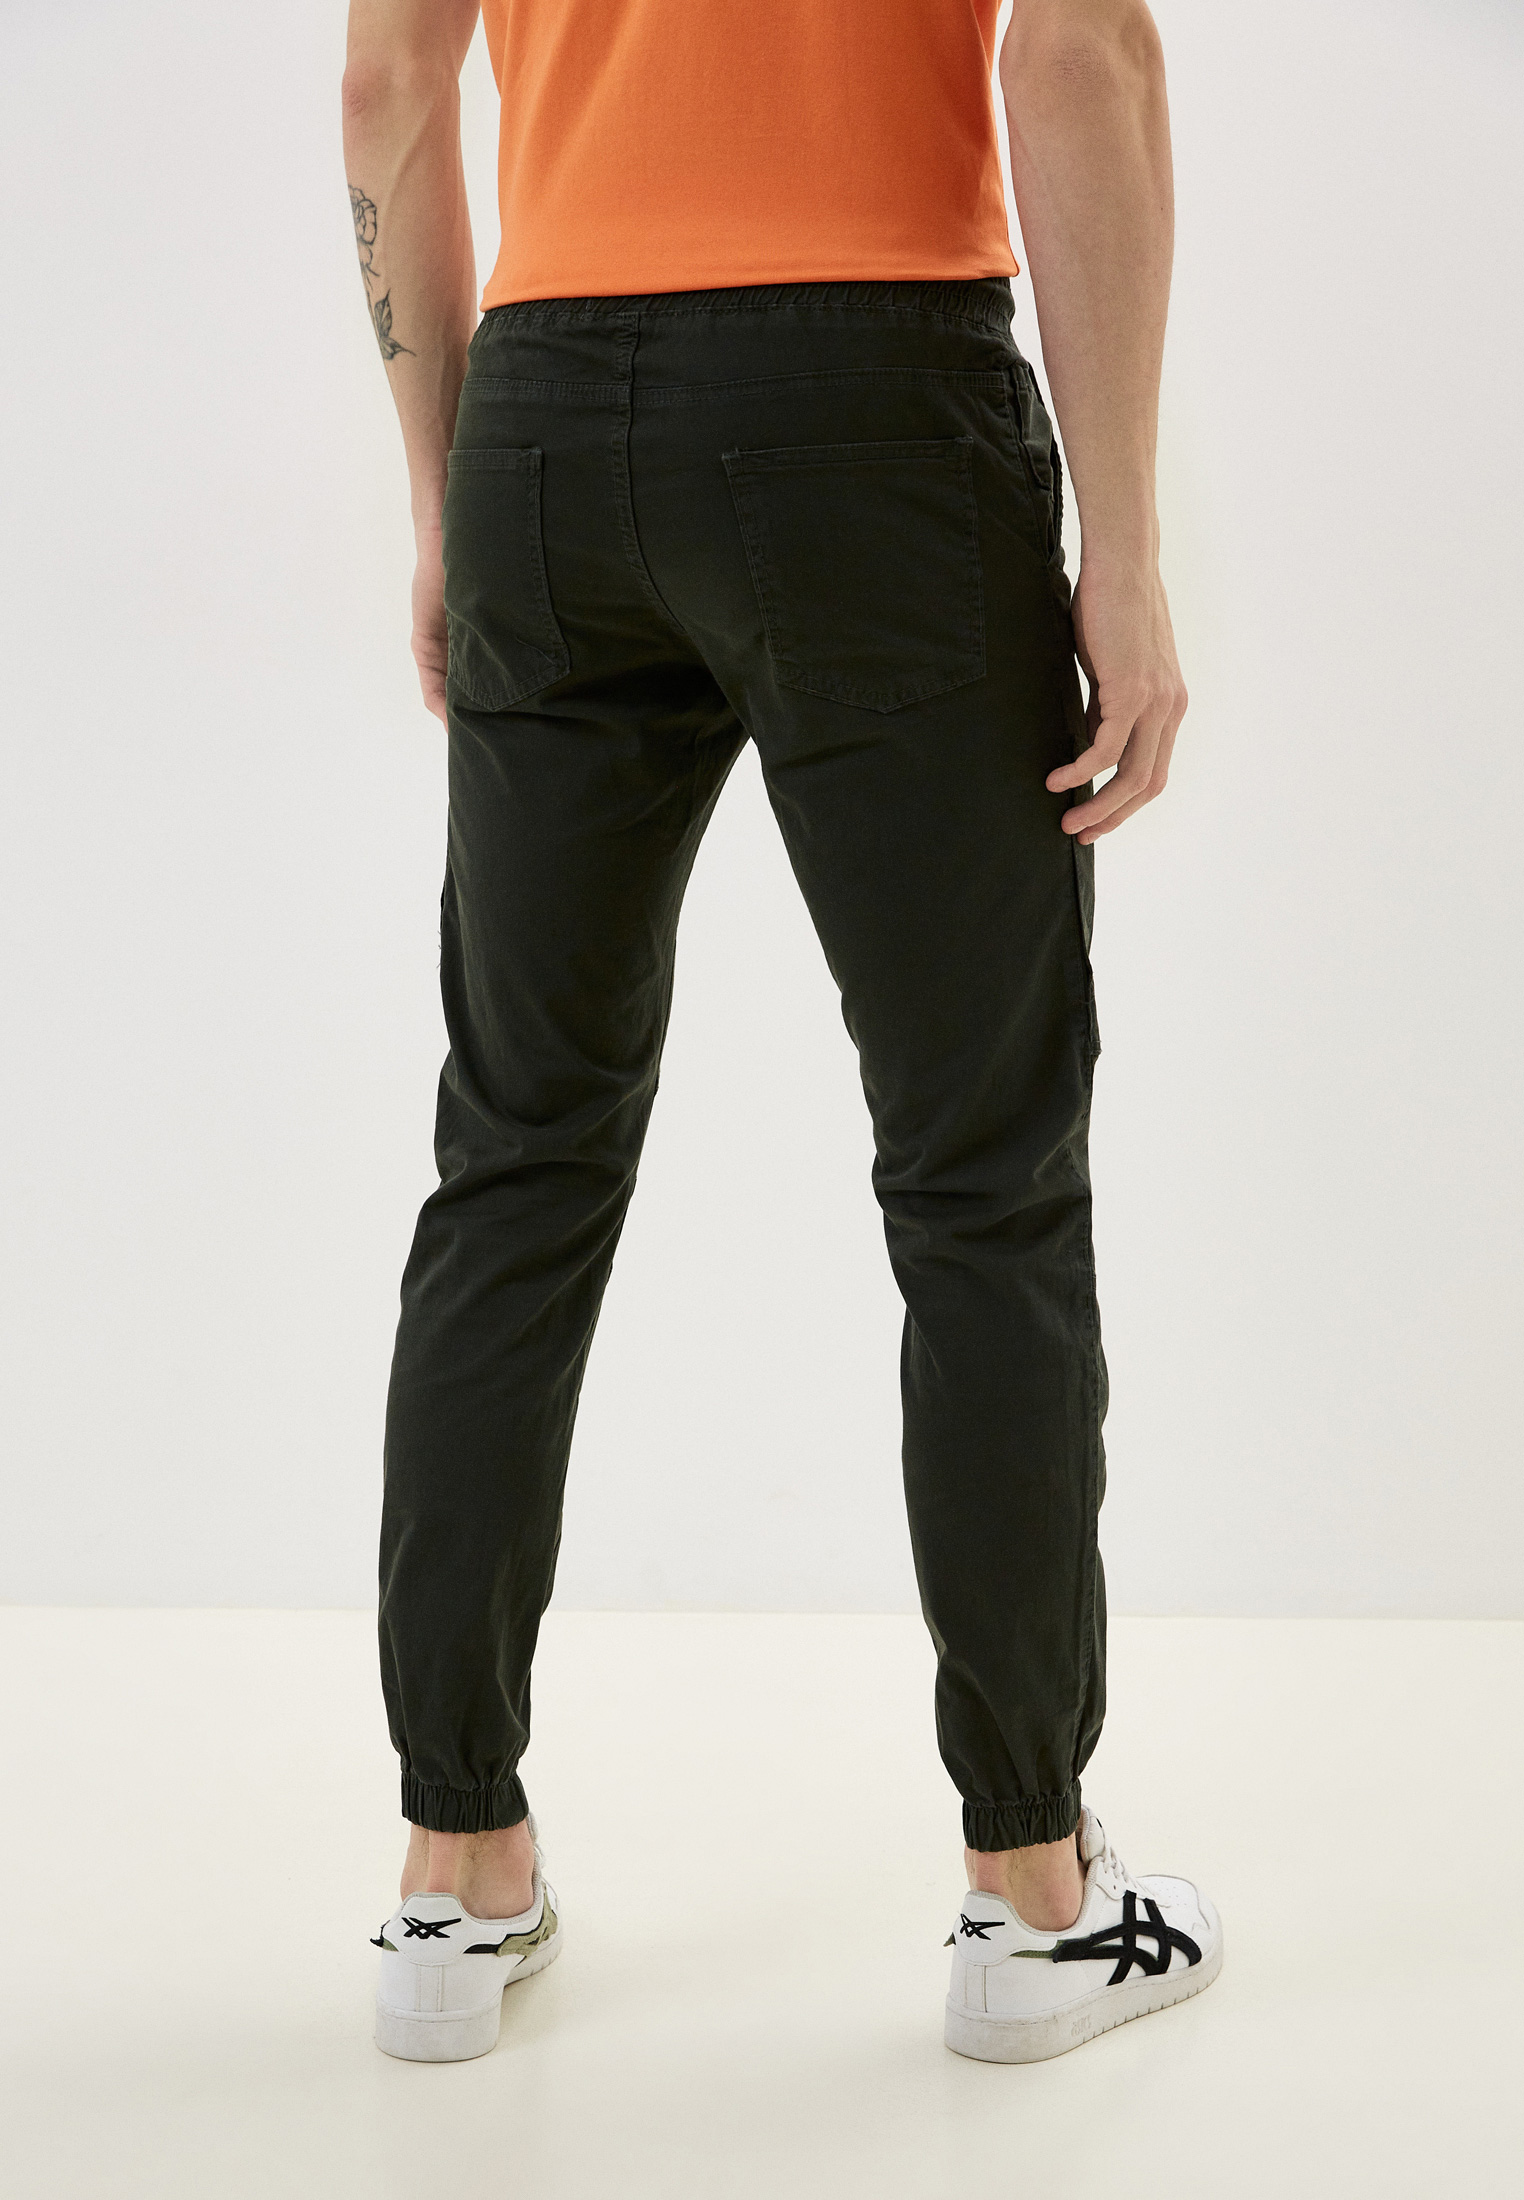 Мужские спортивные брюки Dali Sport b8155: изображение 3